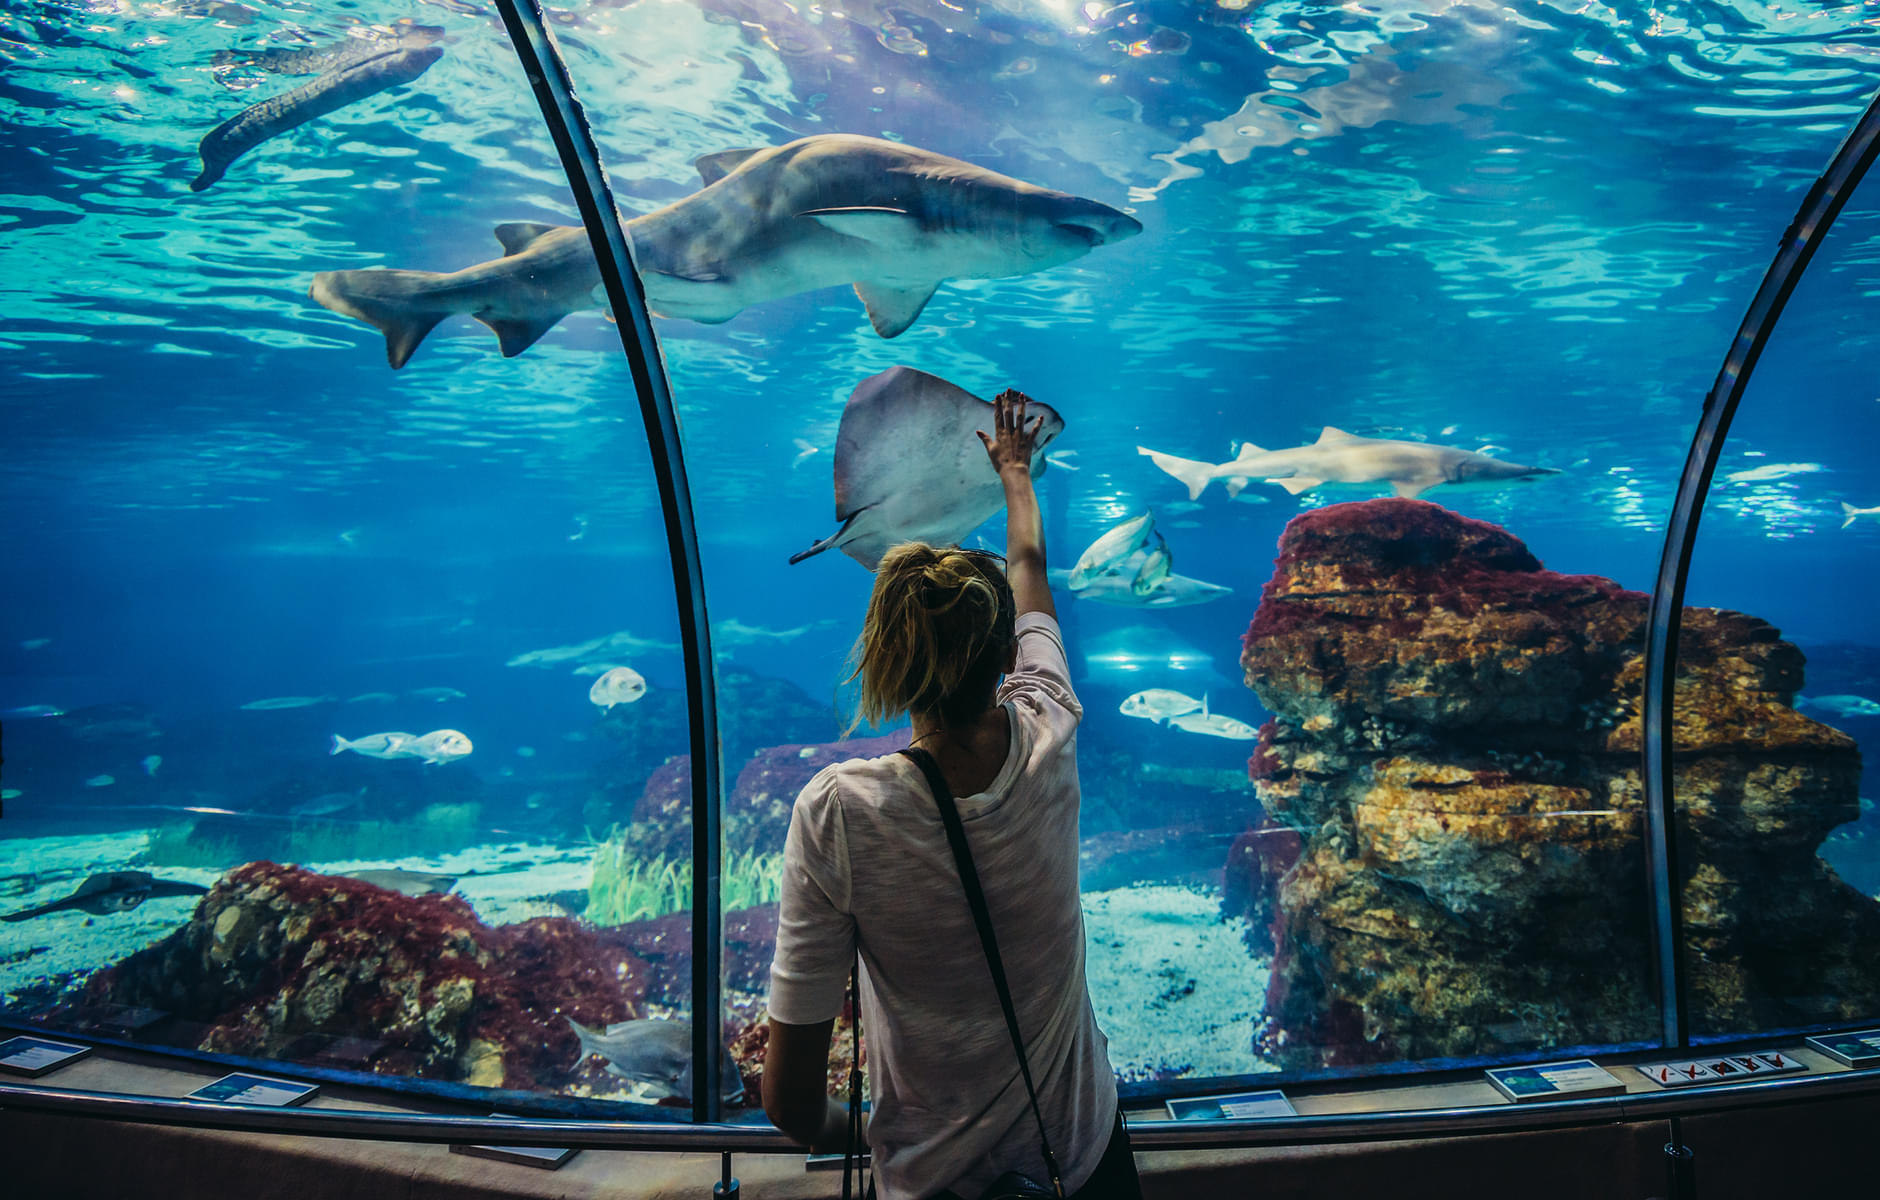 Barcelona Aquarium, Spain